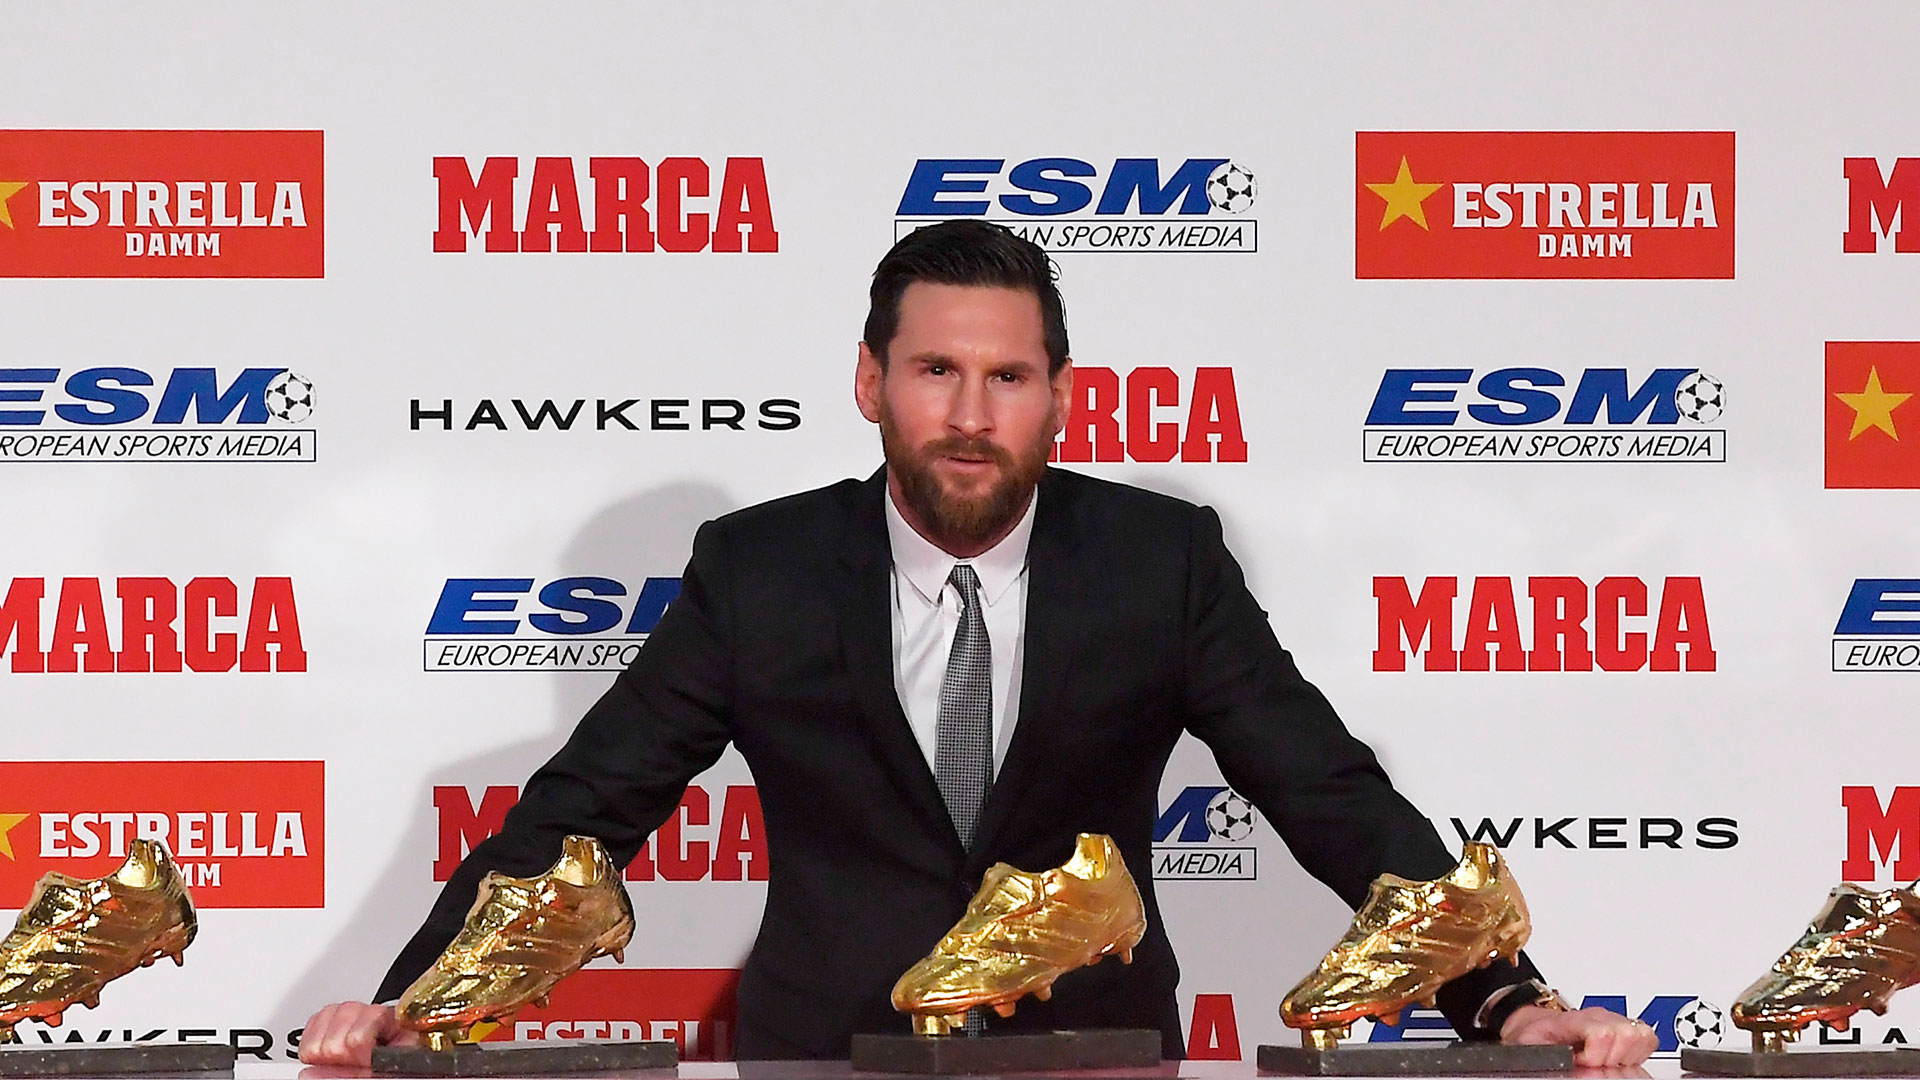 Leo Messi, El Nacional